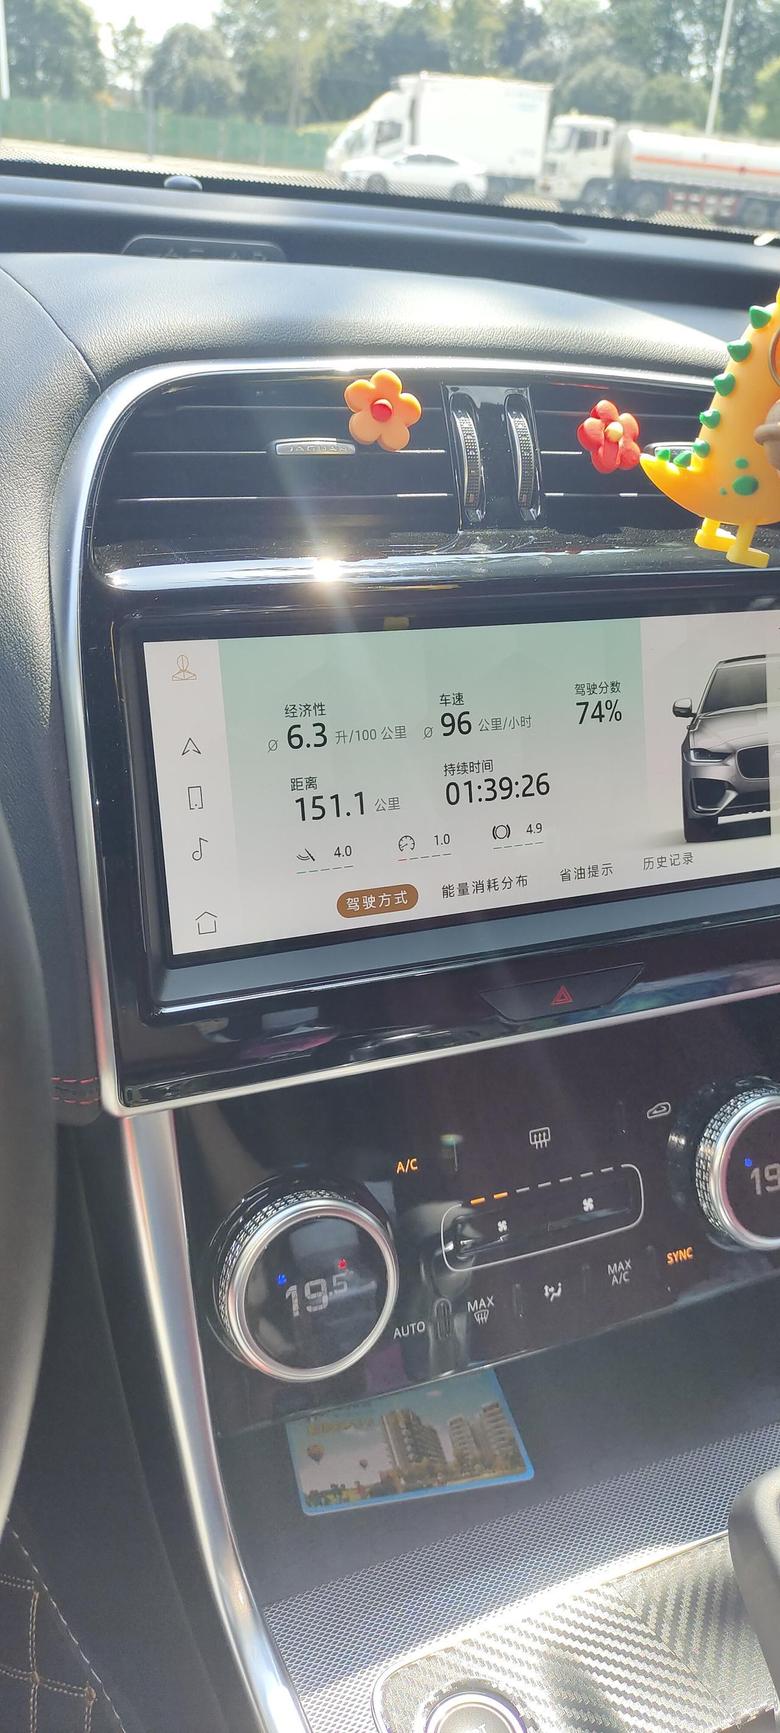 捷豹xel 这是历史最低油耗，实际还低一点，5.8的样子，全程空调19℃，走了一段城市道路就升高了。